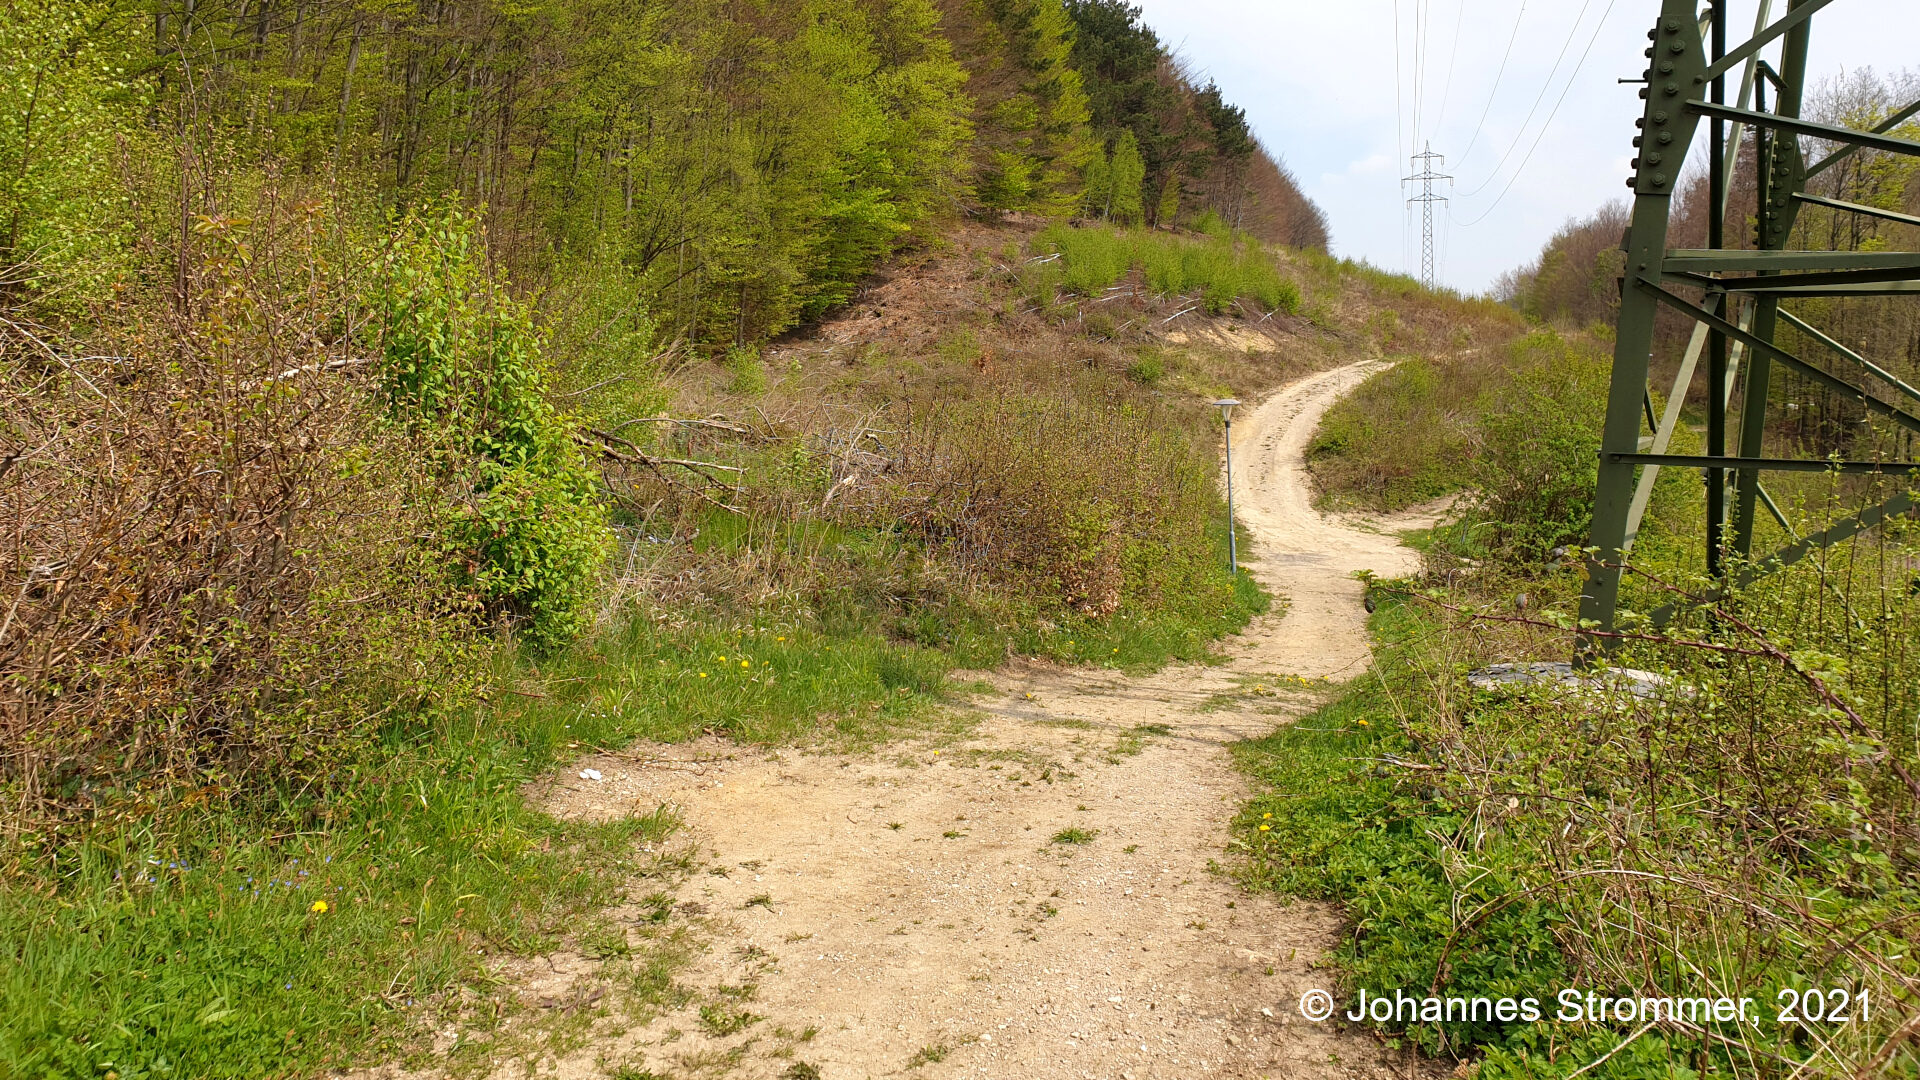 Knapp 600 m vom Bahnhof Rekawinkel entfernt bog die Waldbahn vom jetzigen Forstweg nach links ab, um ein kleines Tal auszufahren. Waldbahn Rekawinkel.